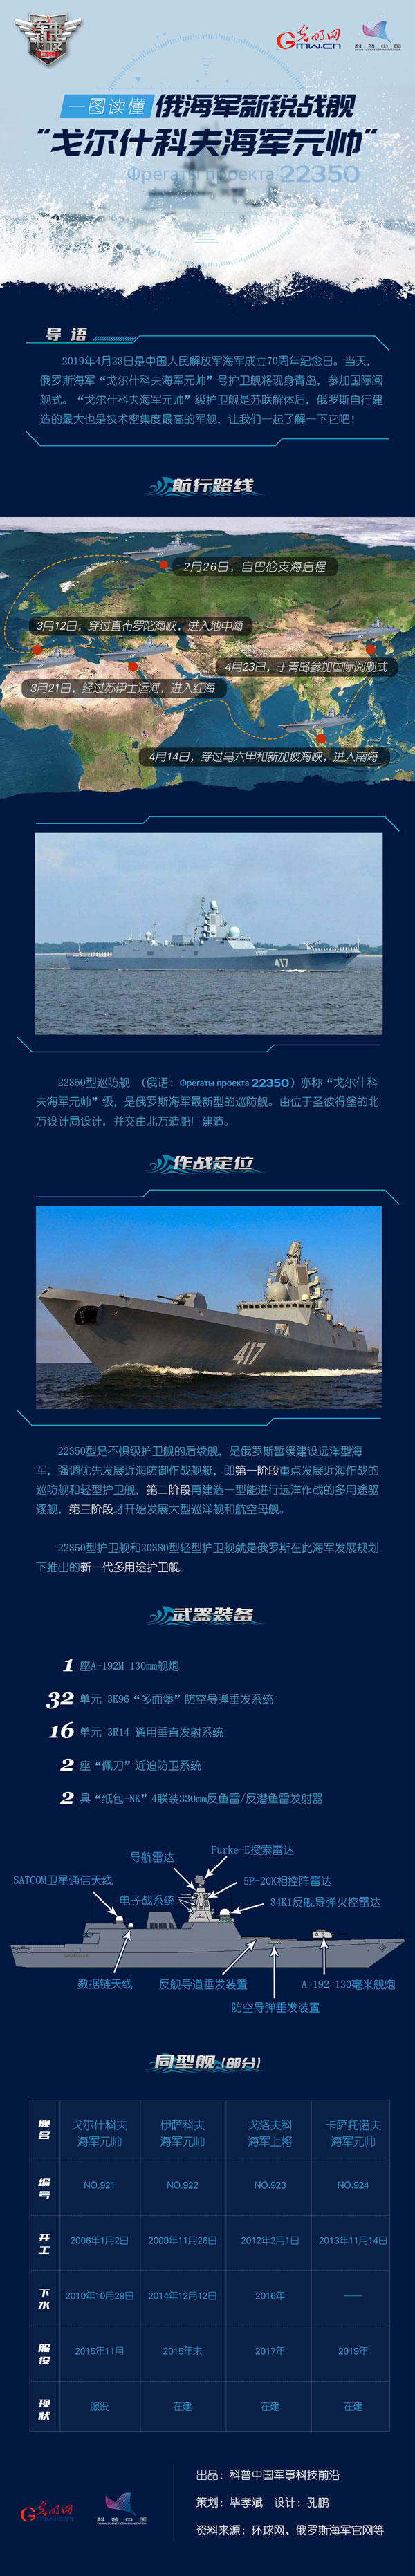 一图读懂俄海军新锐战舰“戈尔什科夫海军元帅”